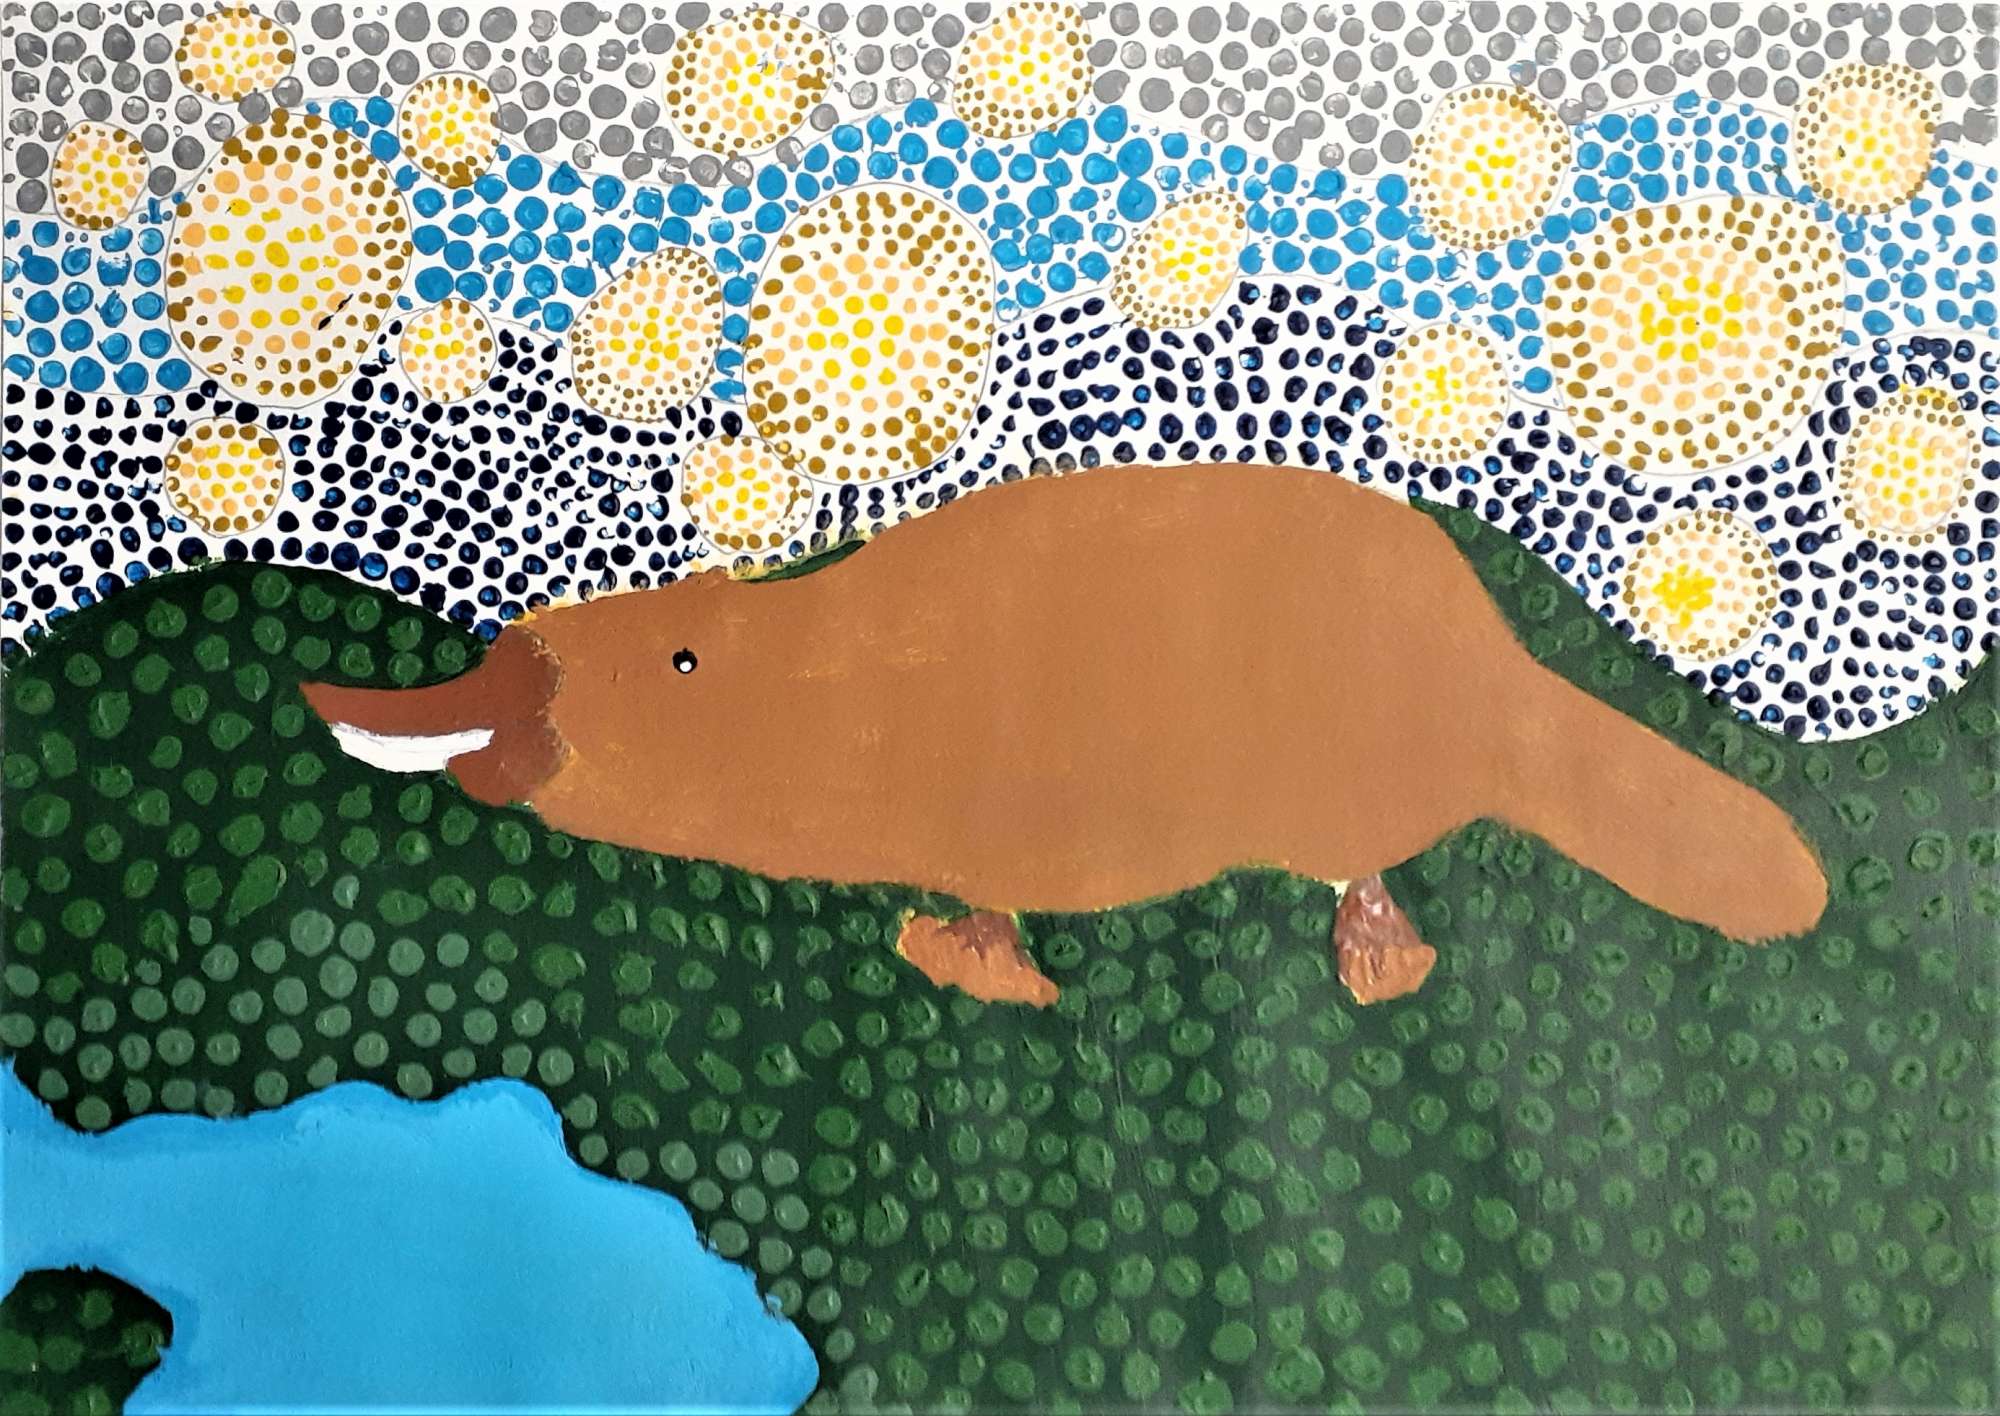 Nagoya Art Exchange 2021 - NSW - Platypus Swimming